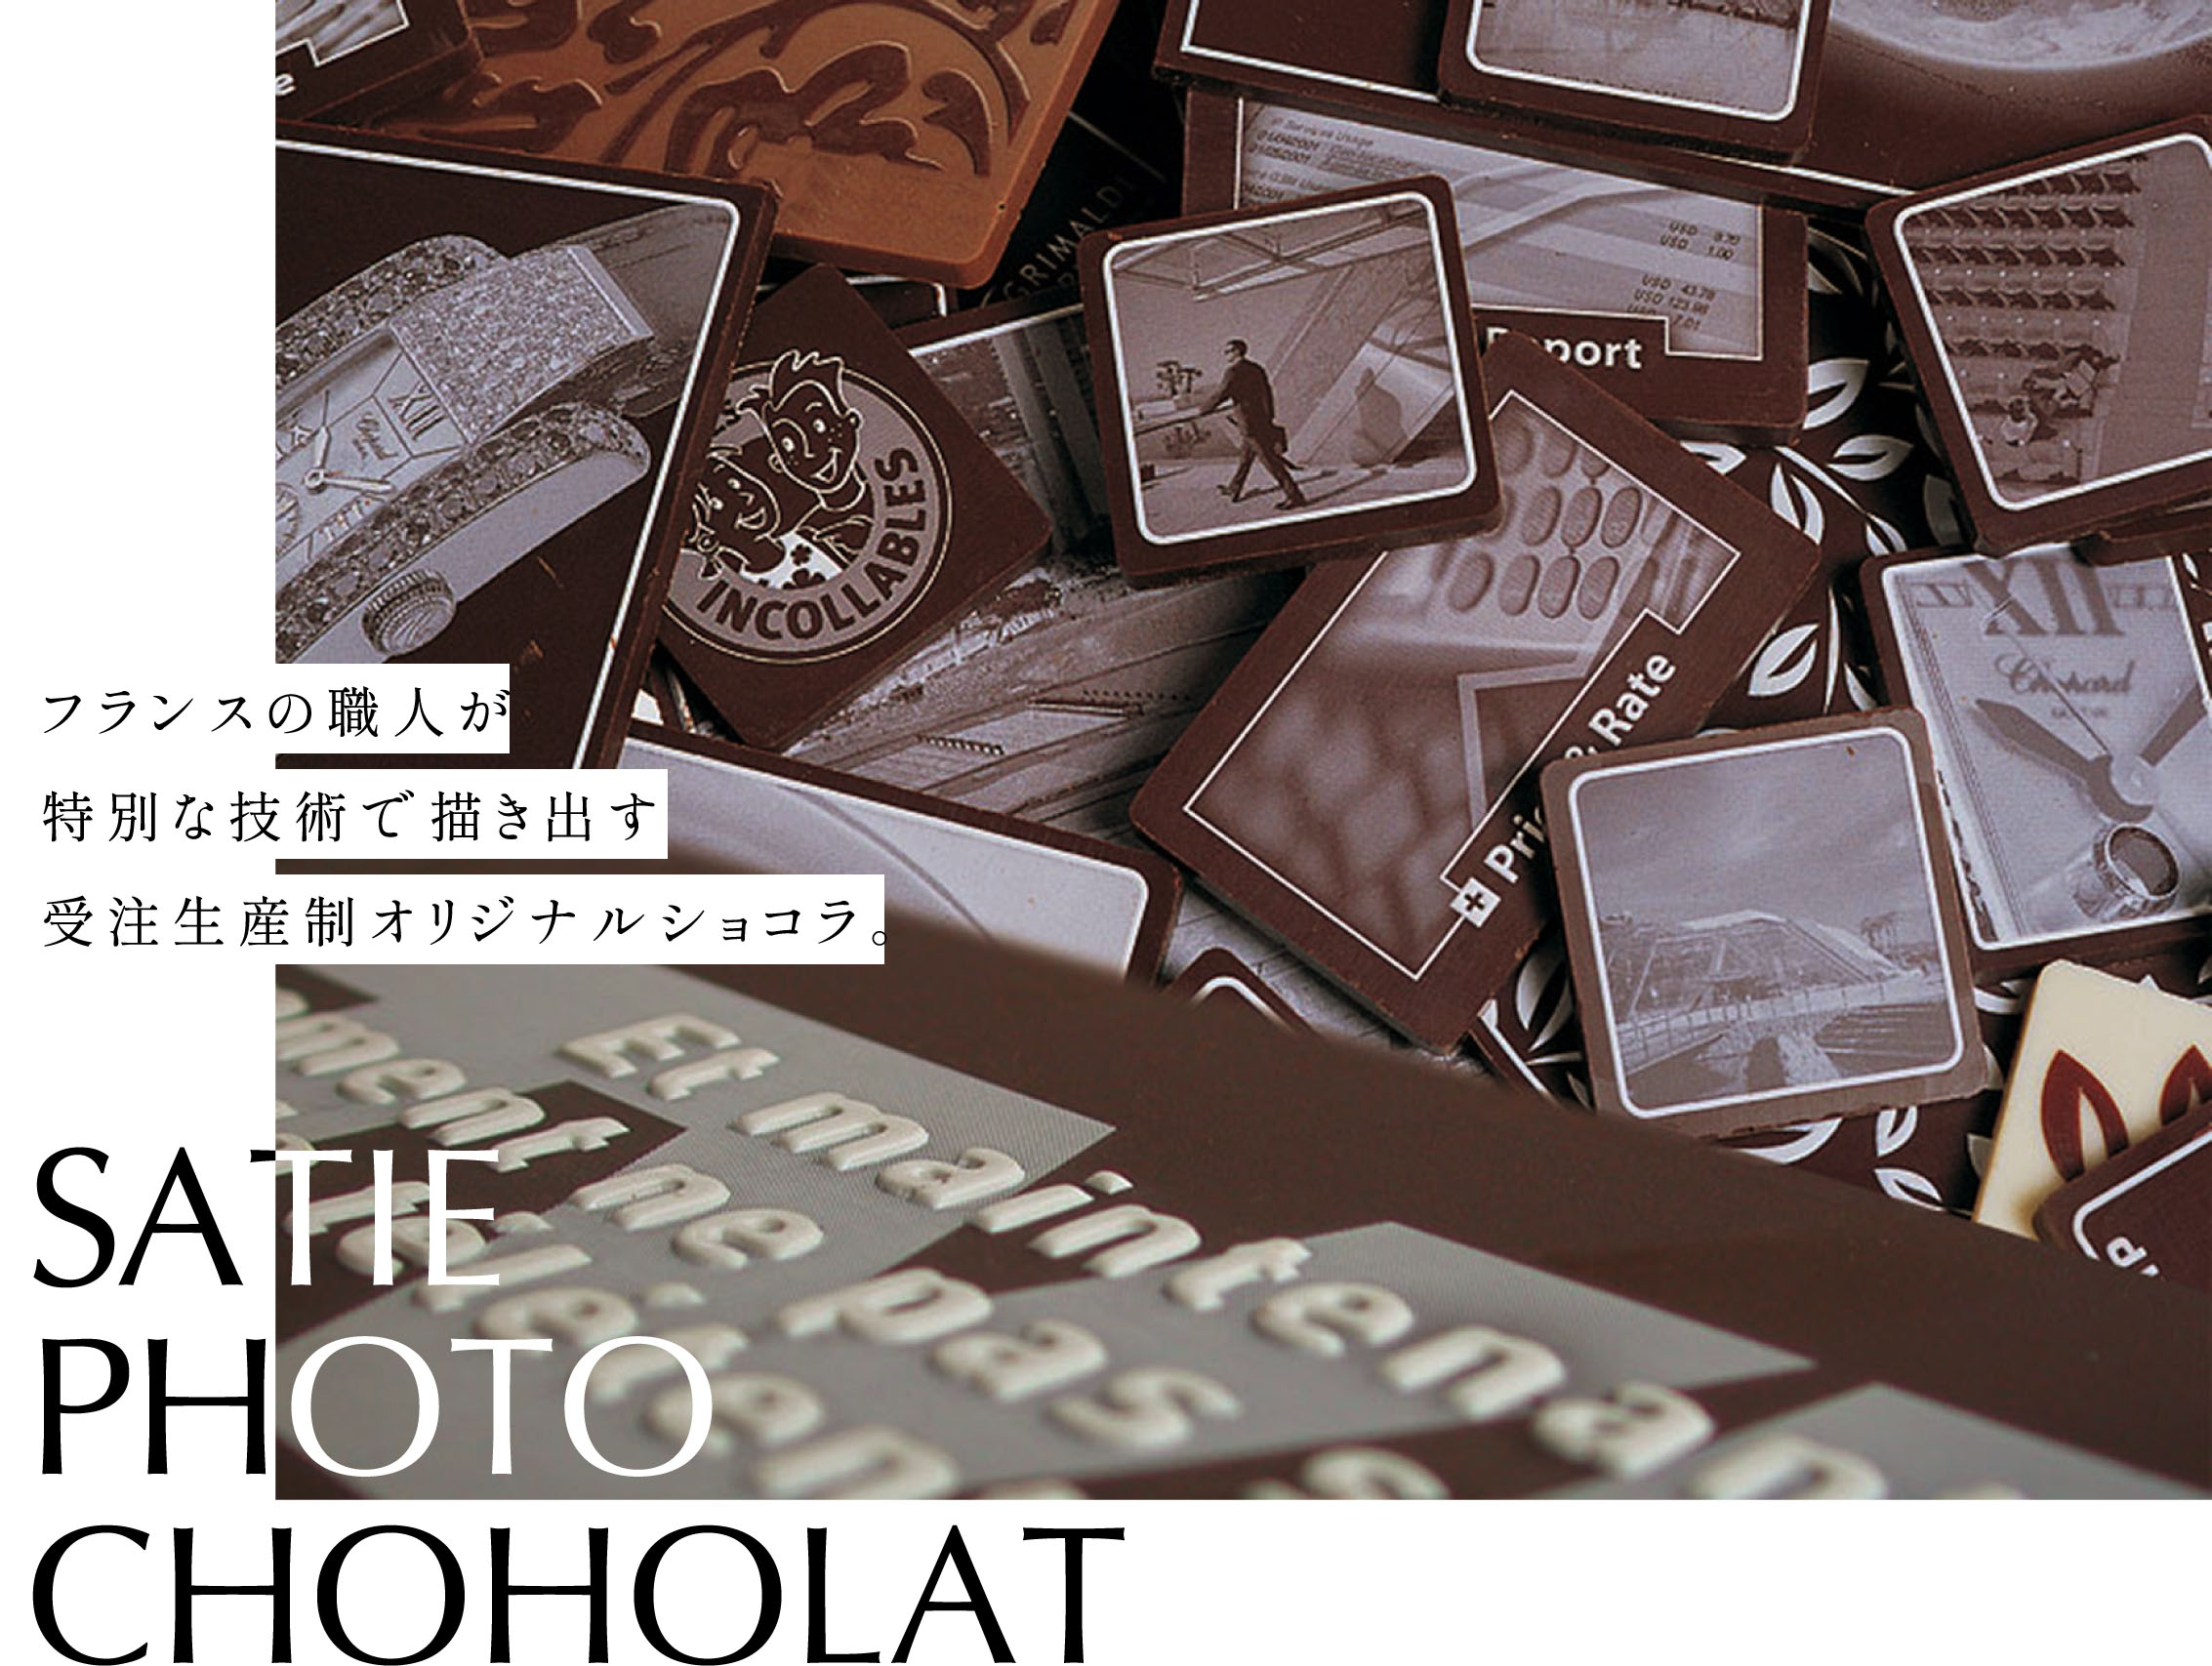 SATIE PHOTO CHOHOLAT フランスの職人が特別な技術で描き出す受注生産制オリジナルショコラ。